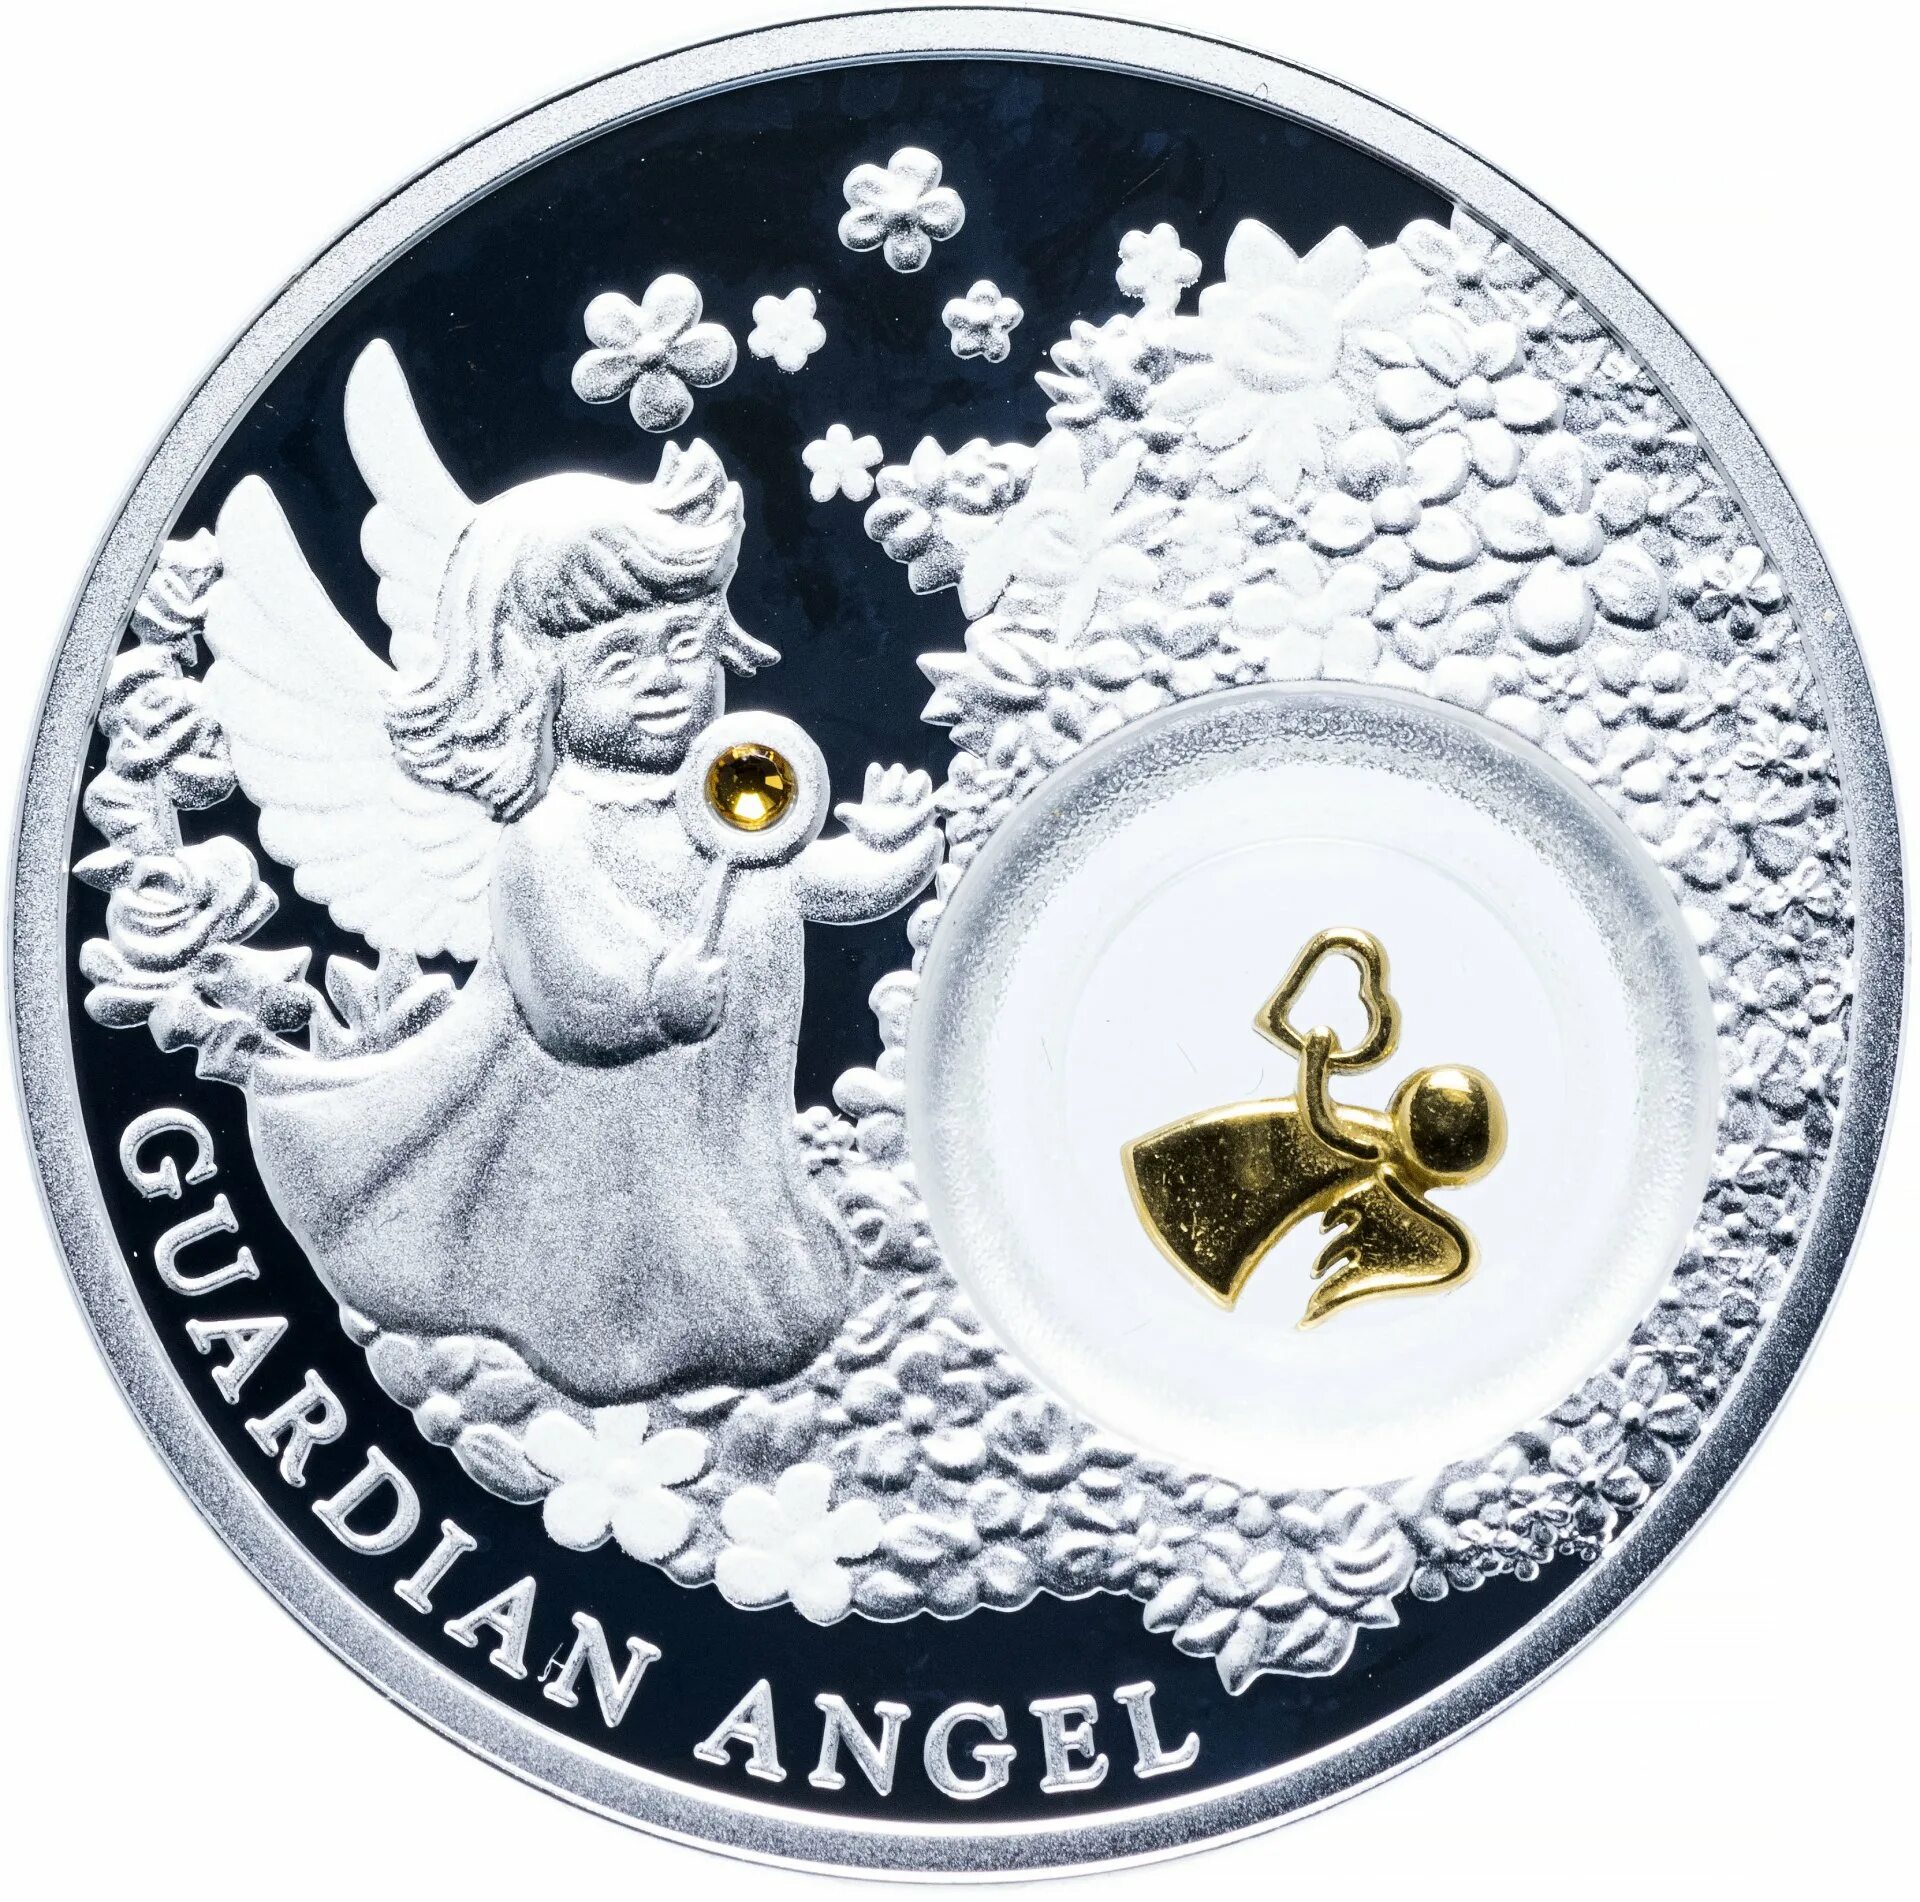 Сколько стоят монеты в сбербанке. Ангел хранитель Ниуэ монета. Ангел хранитель монета серебряная Сбербанк. Ниуэ 2 доллара 2018 ангел хранитель. Монета ангел-хранитель (Ниуэ) - 19.